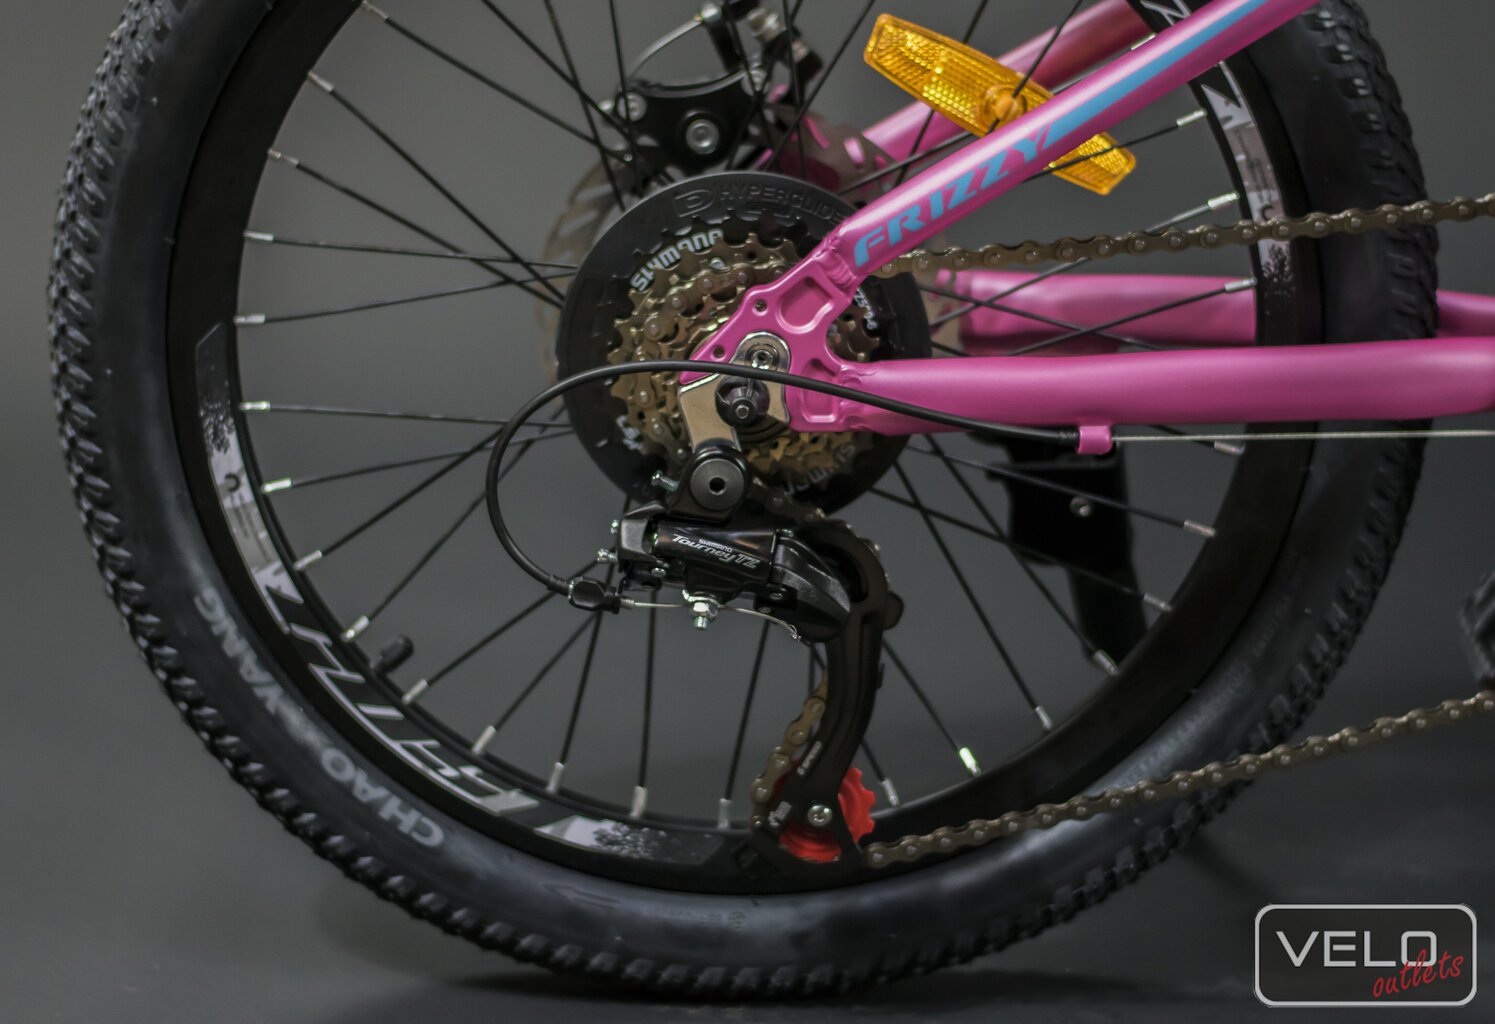 Vaikiškas dviratis, Gust Frizzy 20cll, rožinis kaina ir informacija | Dviračiai | pigu.lt